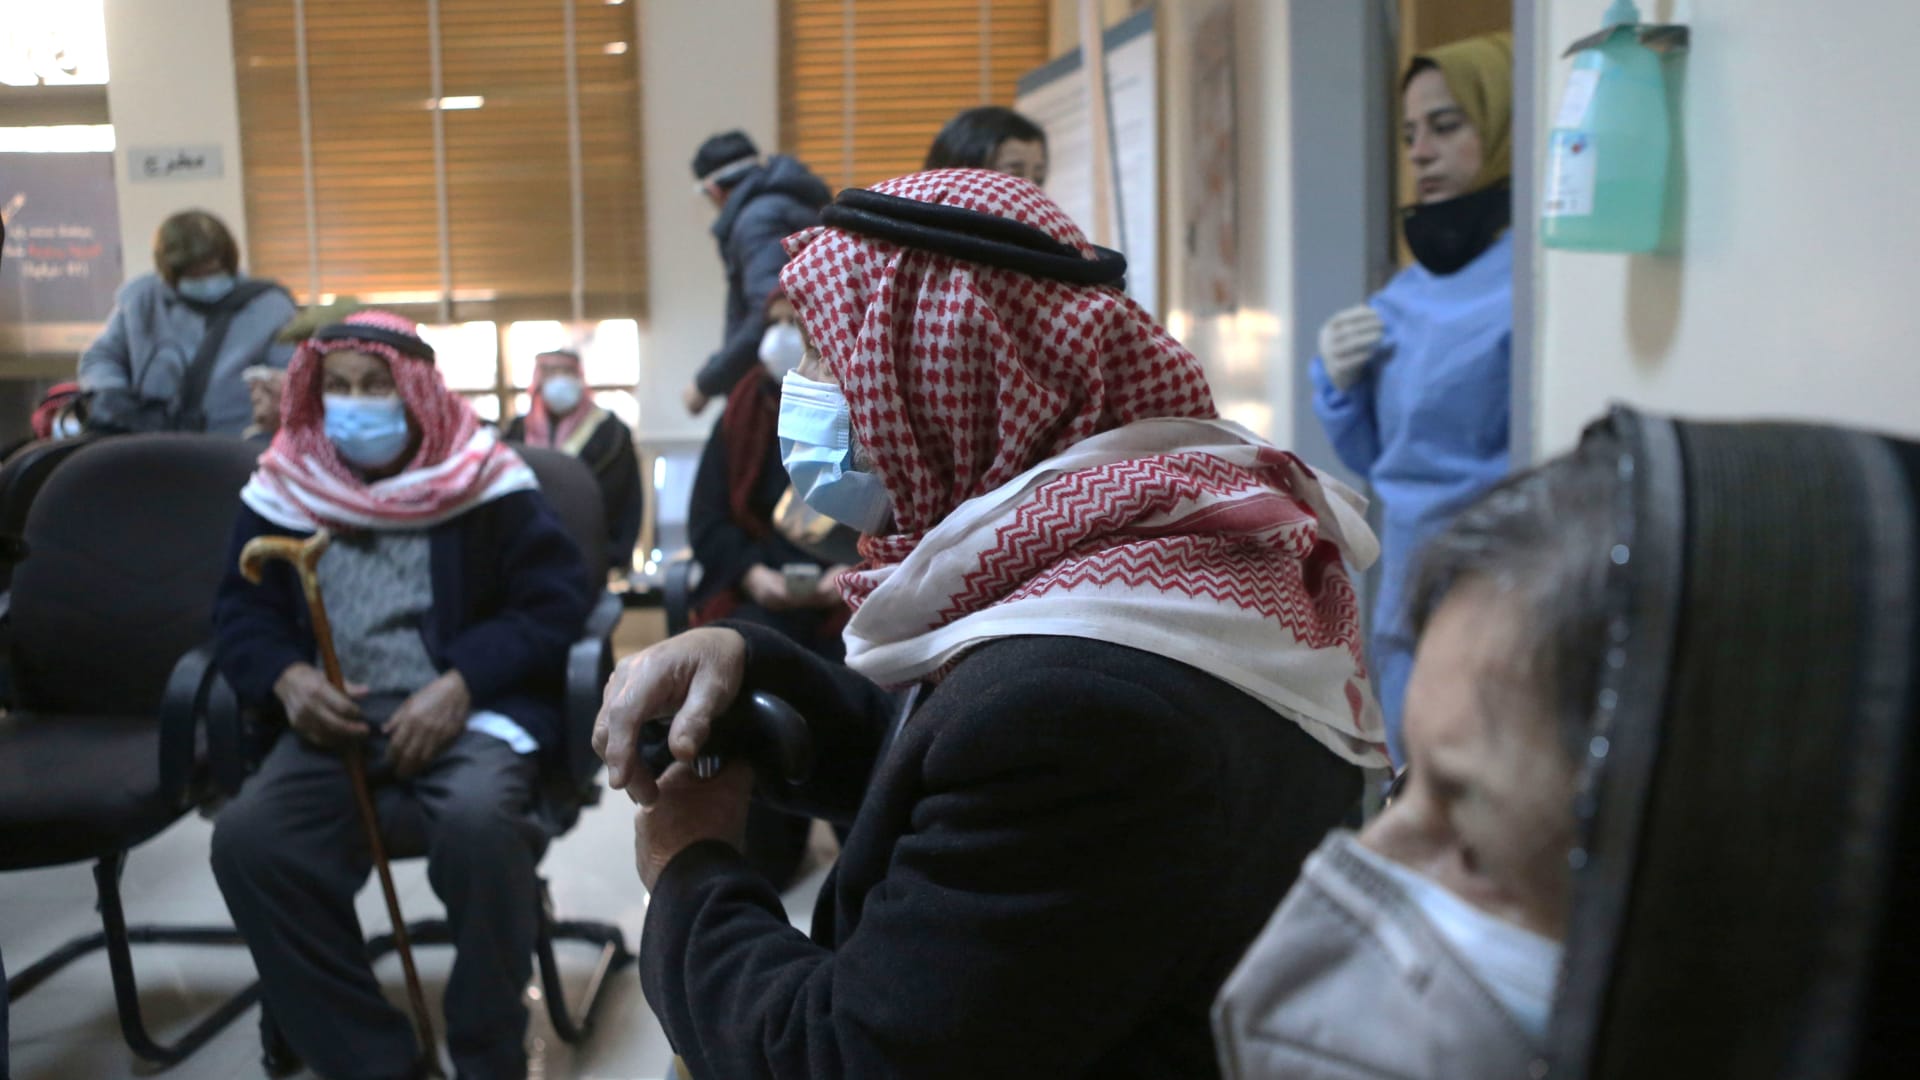 عدد من كبار السن ينتظرون في مستشفي بالأردن للحصول على لقاح كورونا